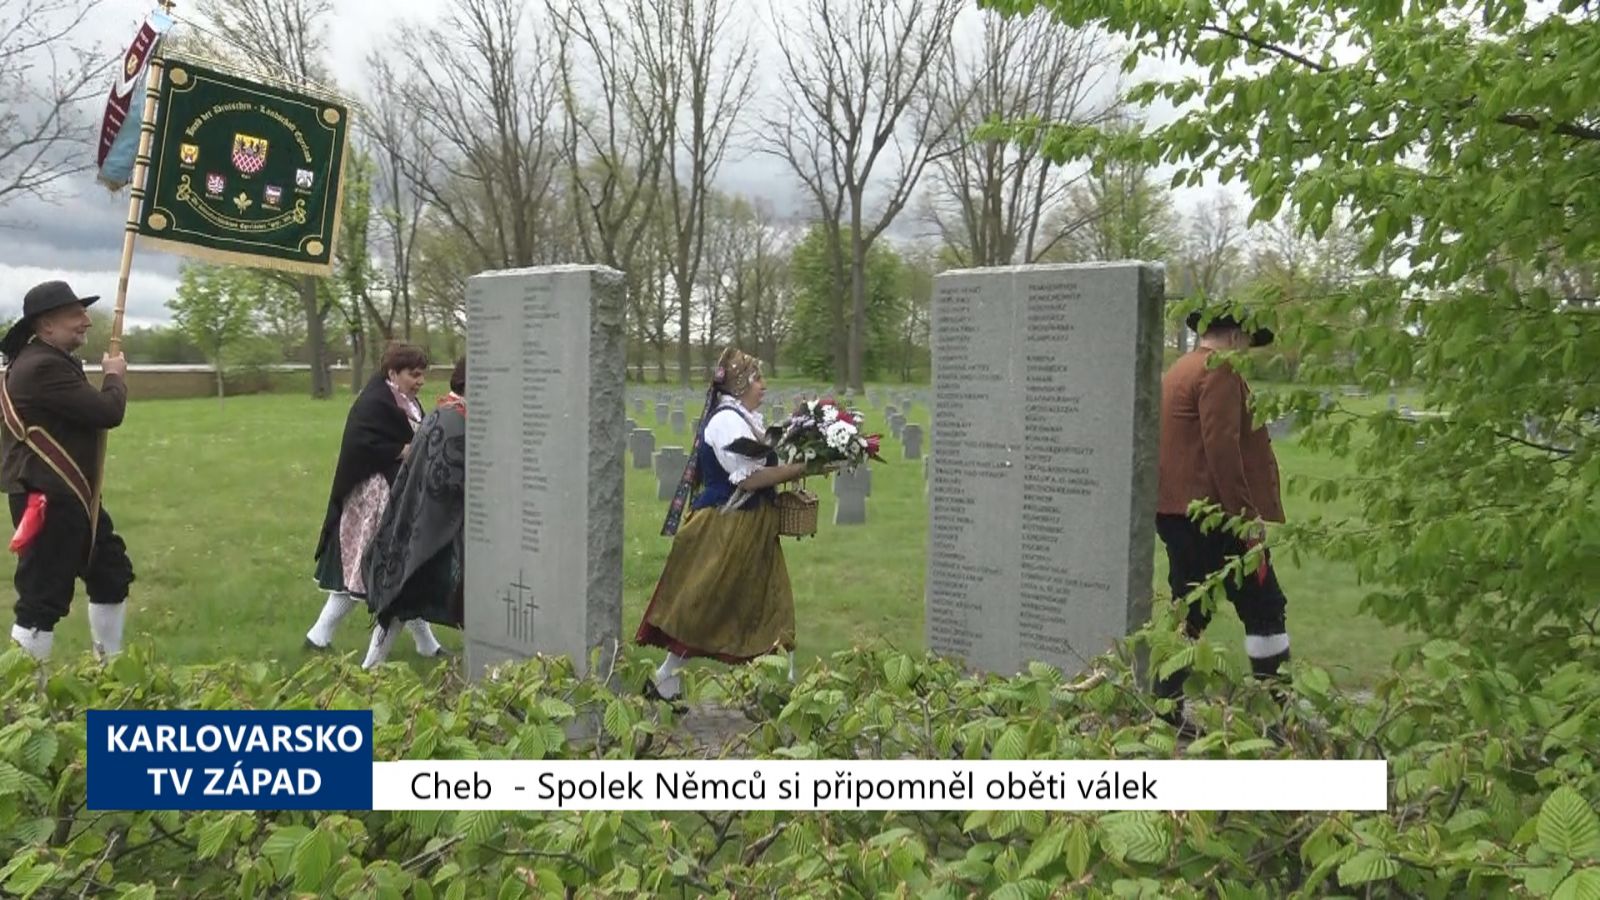 Cheb: Spolek Němců si připomněl oběti světové války (TV Západ)